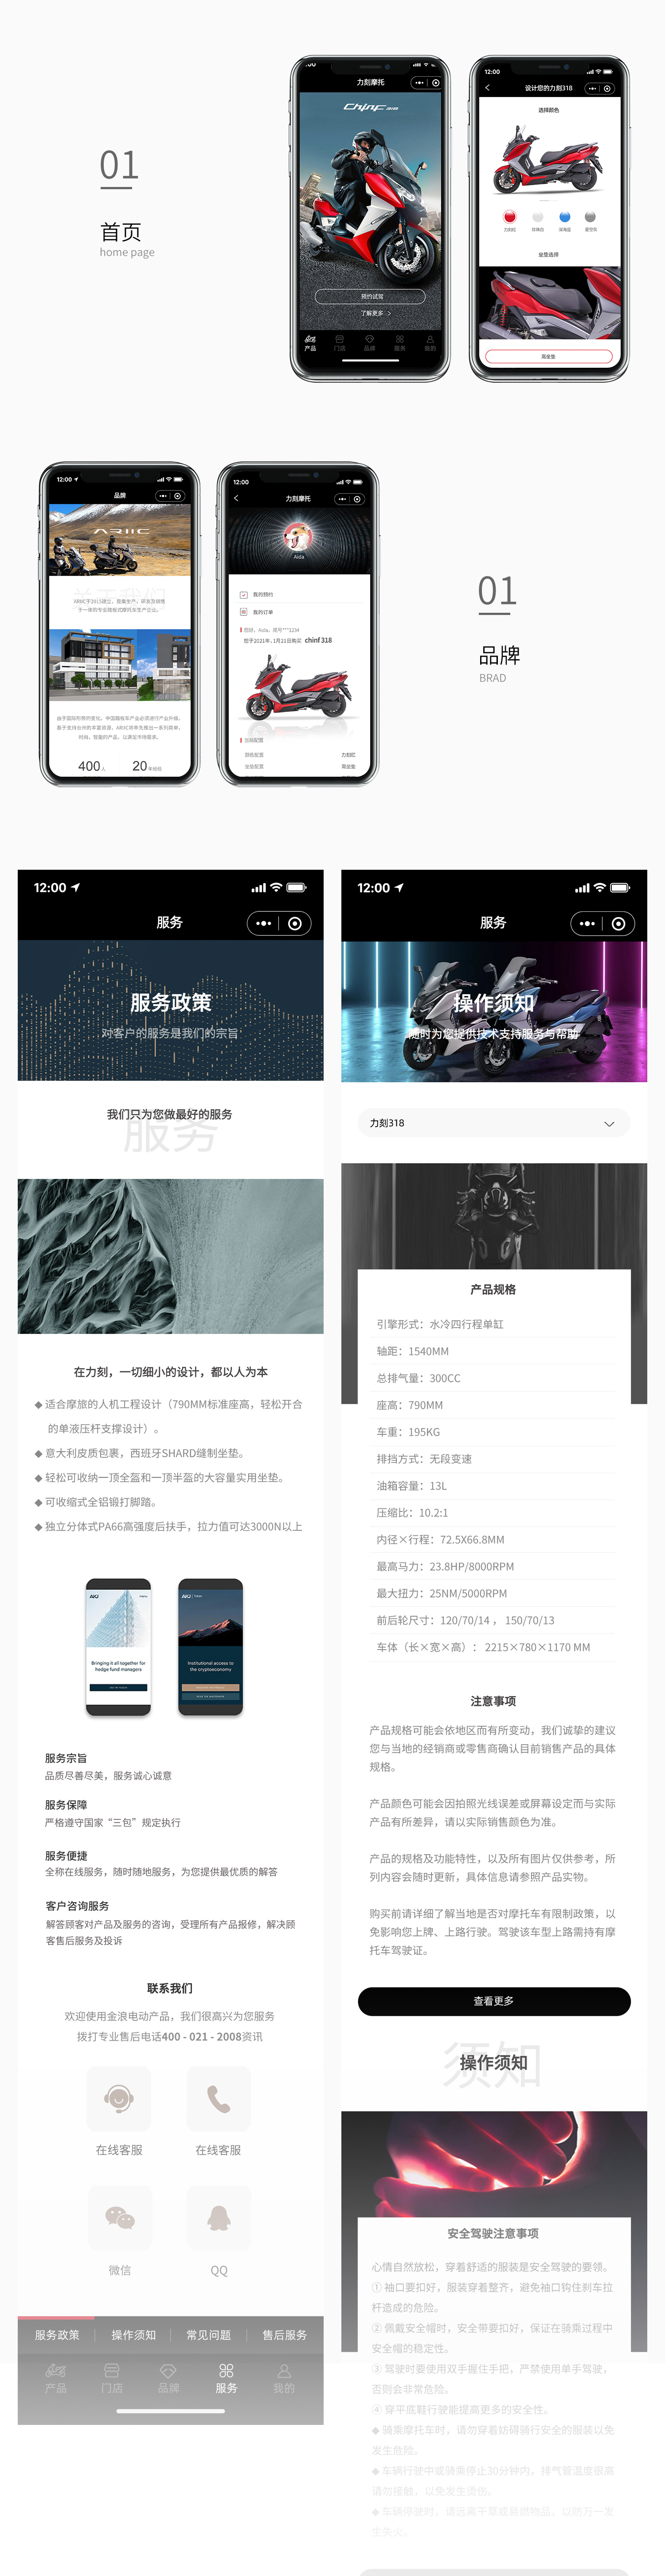 立刻摩托H5开发-新媒体营销,新媒体广告公司,上海网络营销,微信代运营,高端网站建设,网站建设公司